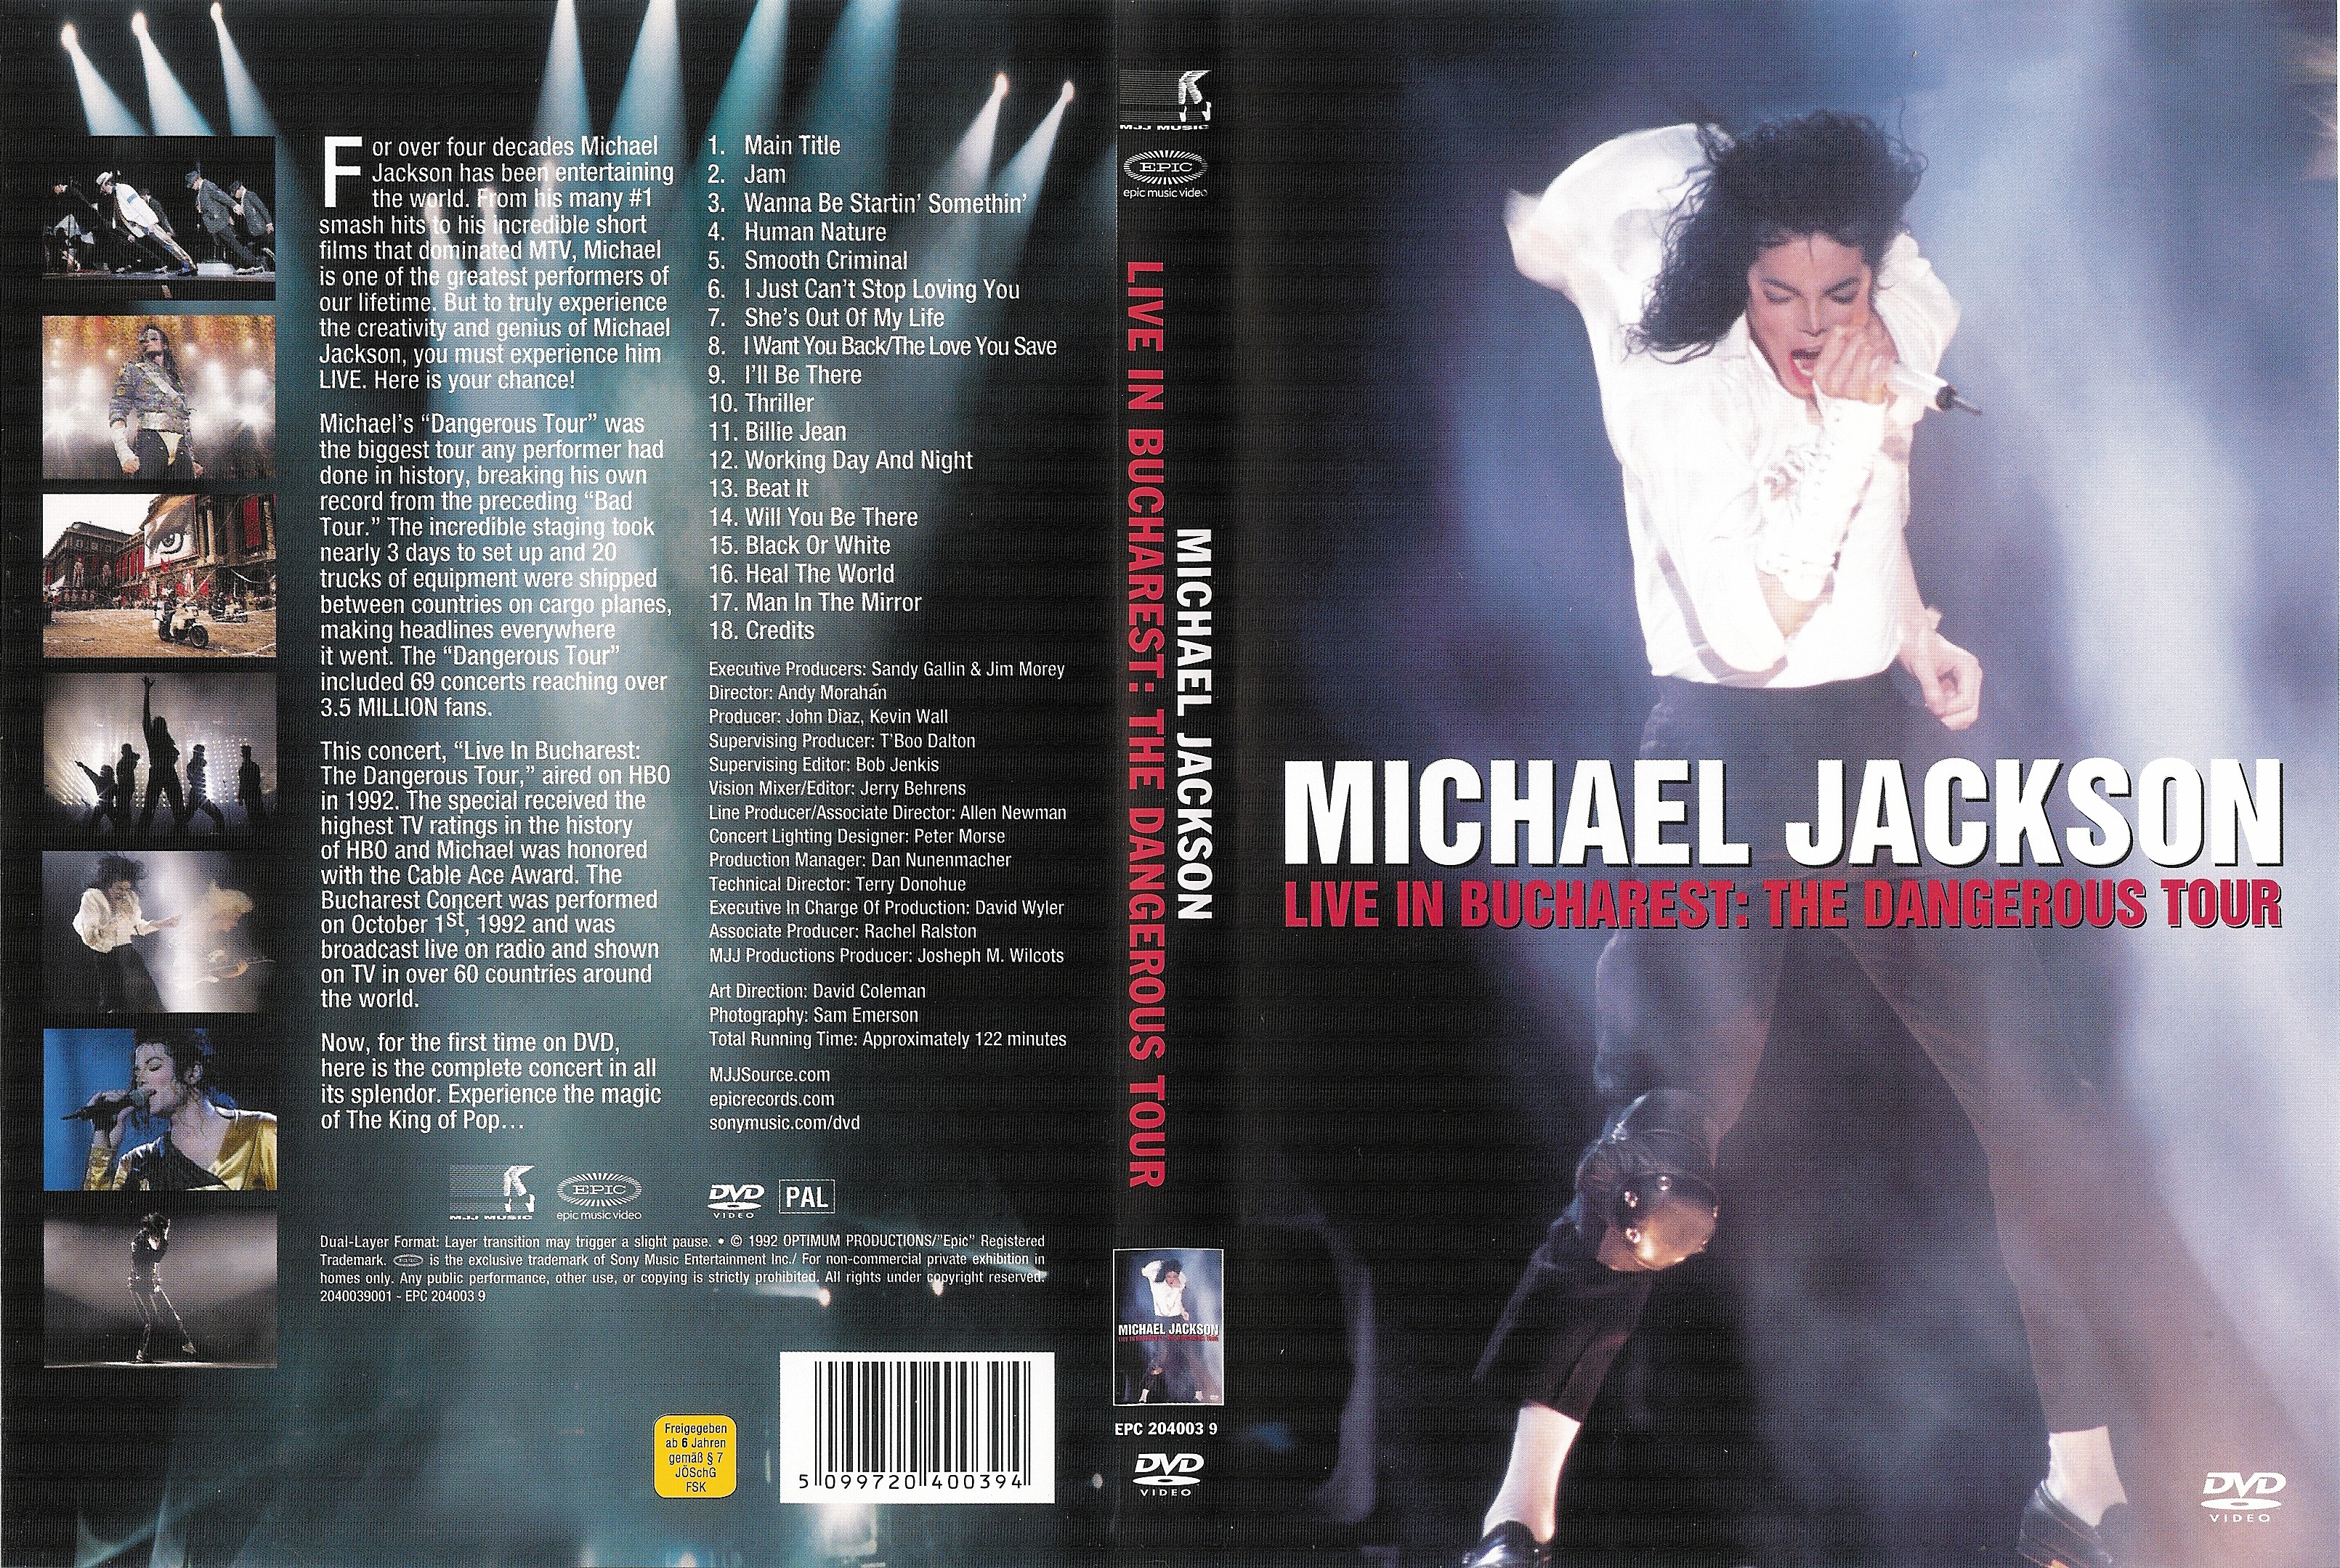 Jaquette DVD Michael Jackson Live in Bucarest the dangerous tour